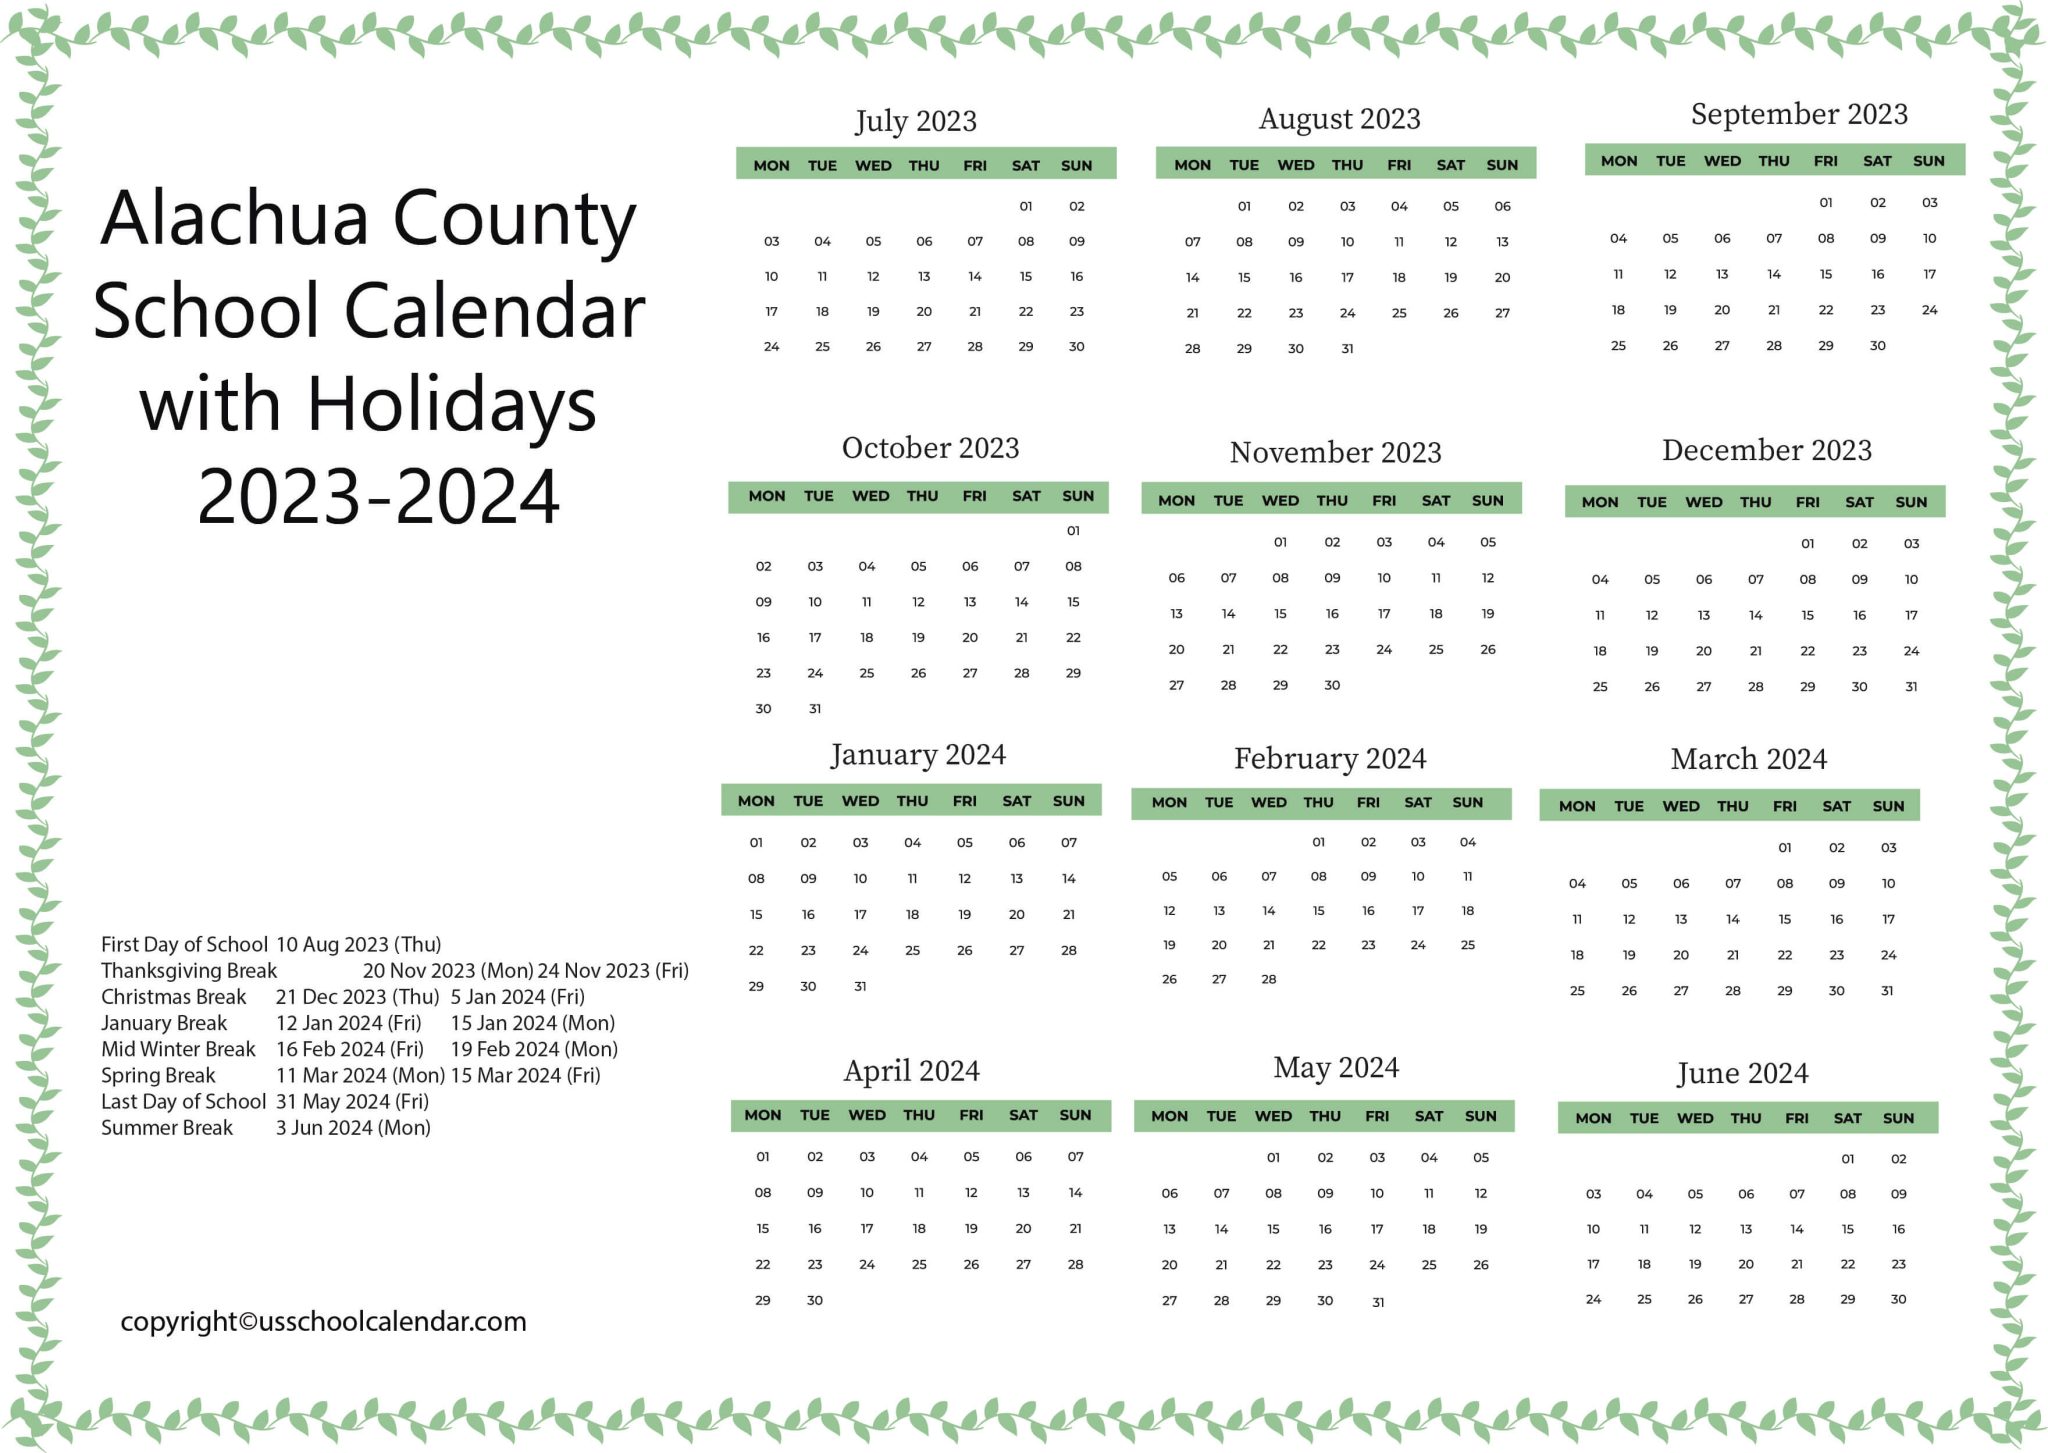 alachua-county-school-calendar-with-holidays-2023-2024